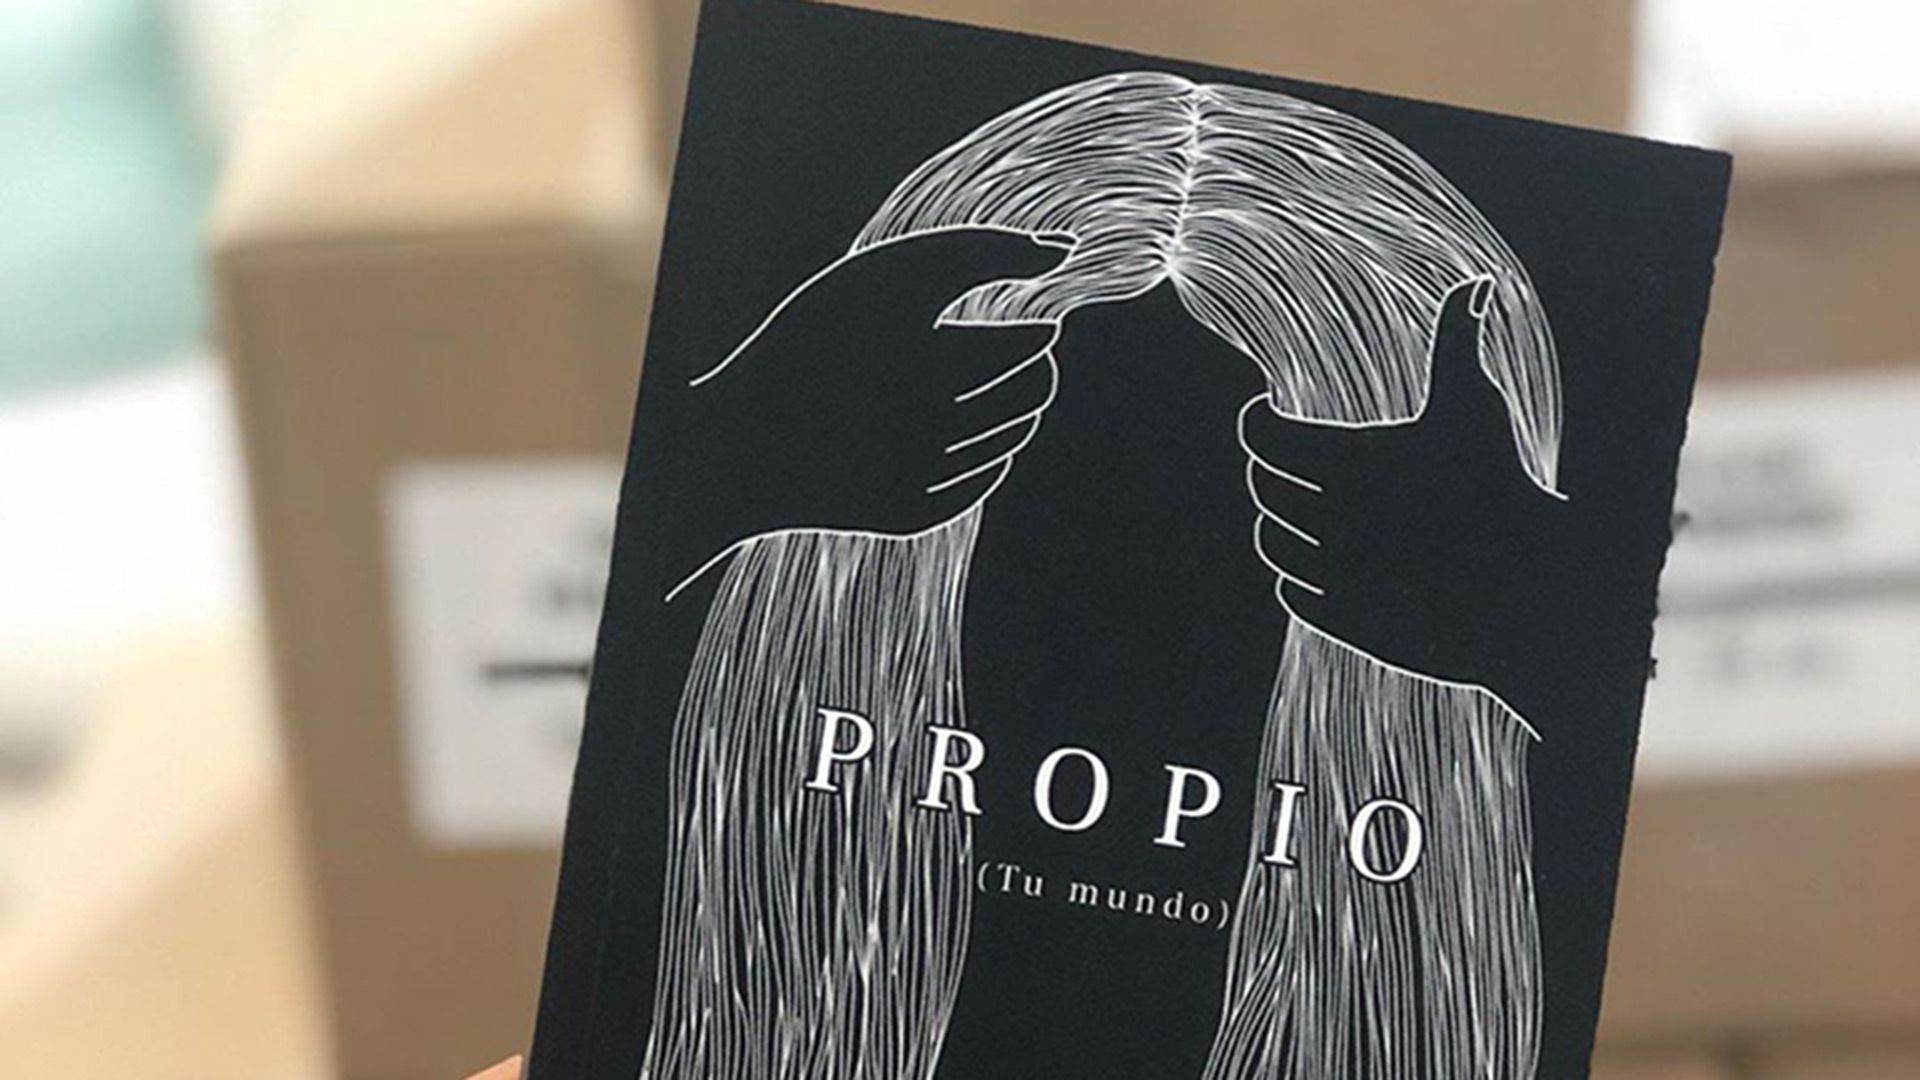 En marzo Picky presentará su libro "Propio (tu mundo)". "Son relatos emocionales donde hablo de las emociones, de las sensaciones que nos causan esas emociones y de cómo trabajar con eso para ser más amables con uno"